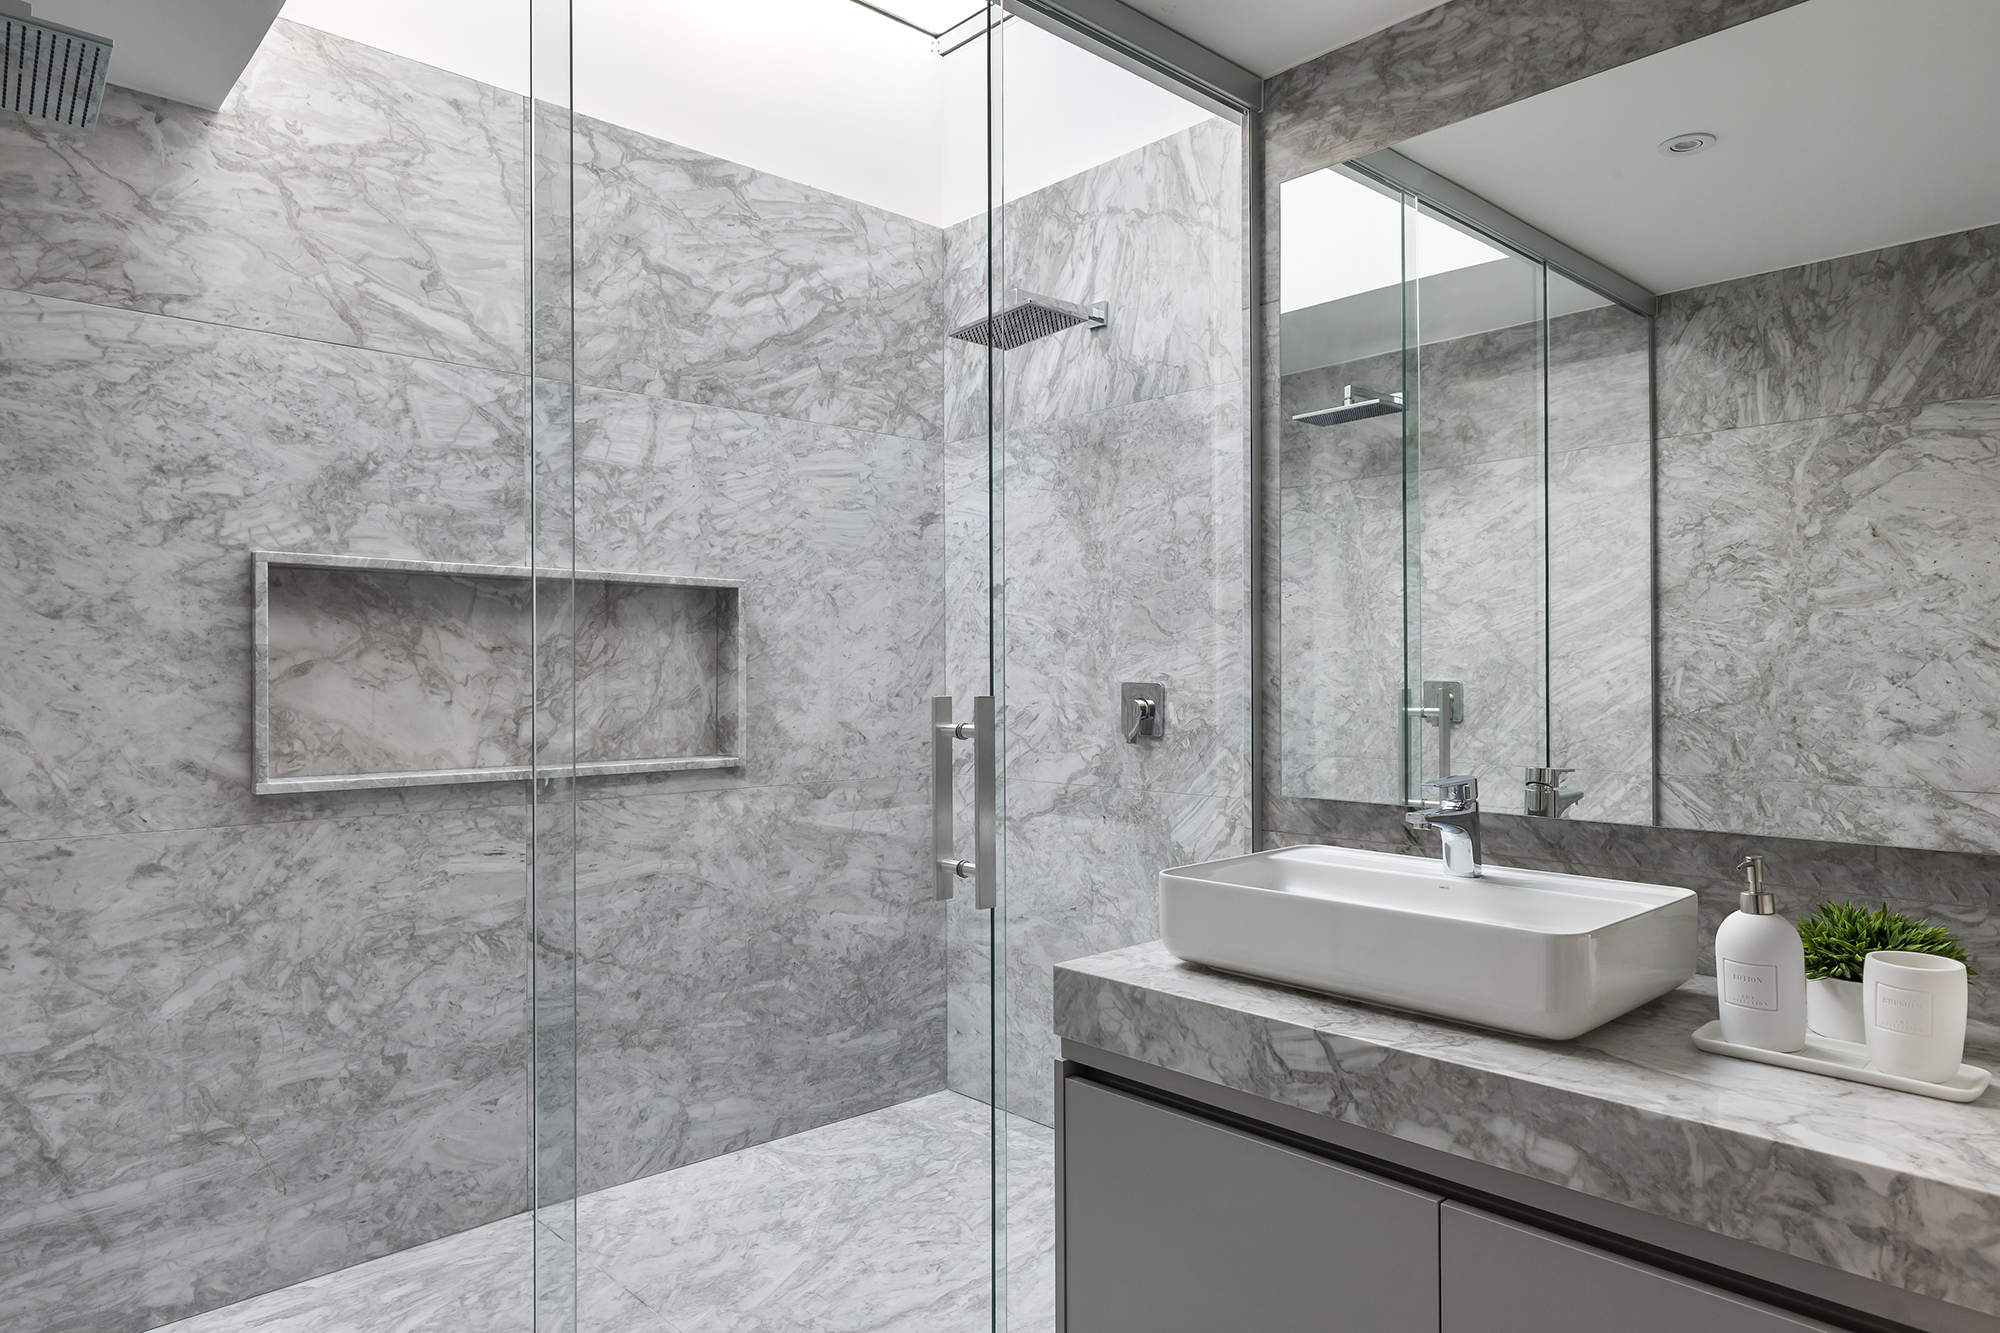 Serra Juvevê Decorado: projeto do arquiteto Jayme Bernardo com o mármore Khronos no banheiro. | Crédito: Eduardo Macarios